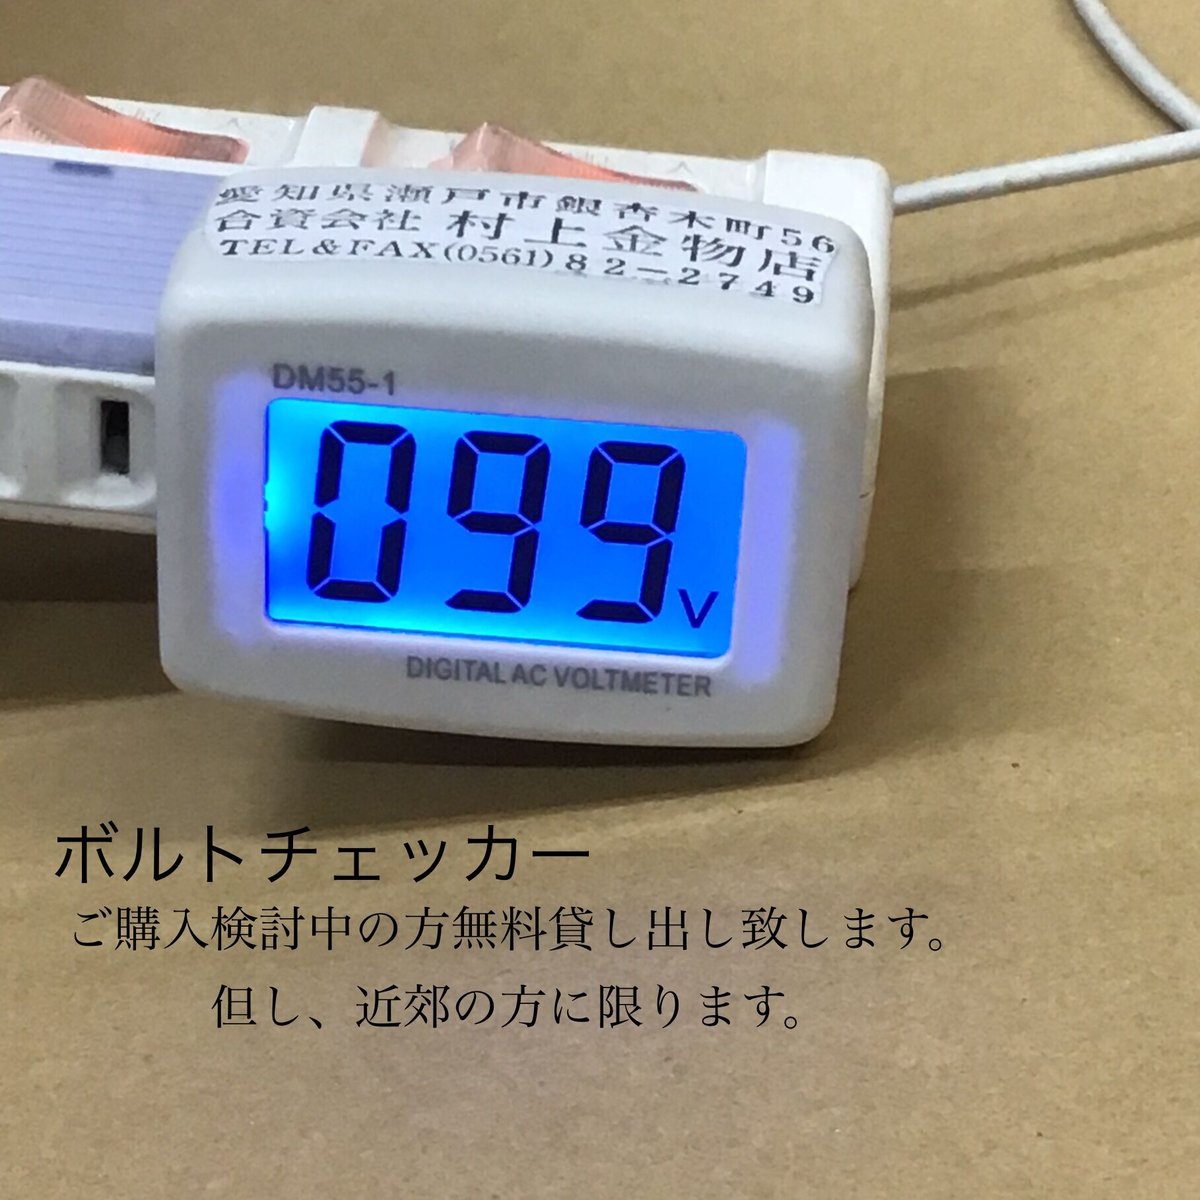 日本電産シンポ 電気窯DMT-01 御見積もり致します。 陶芸道具むらかみ